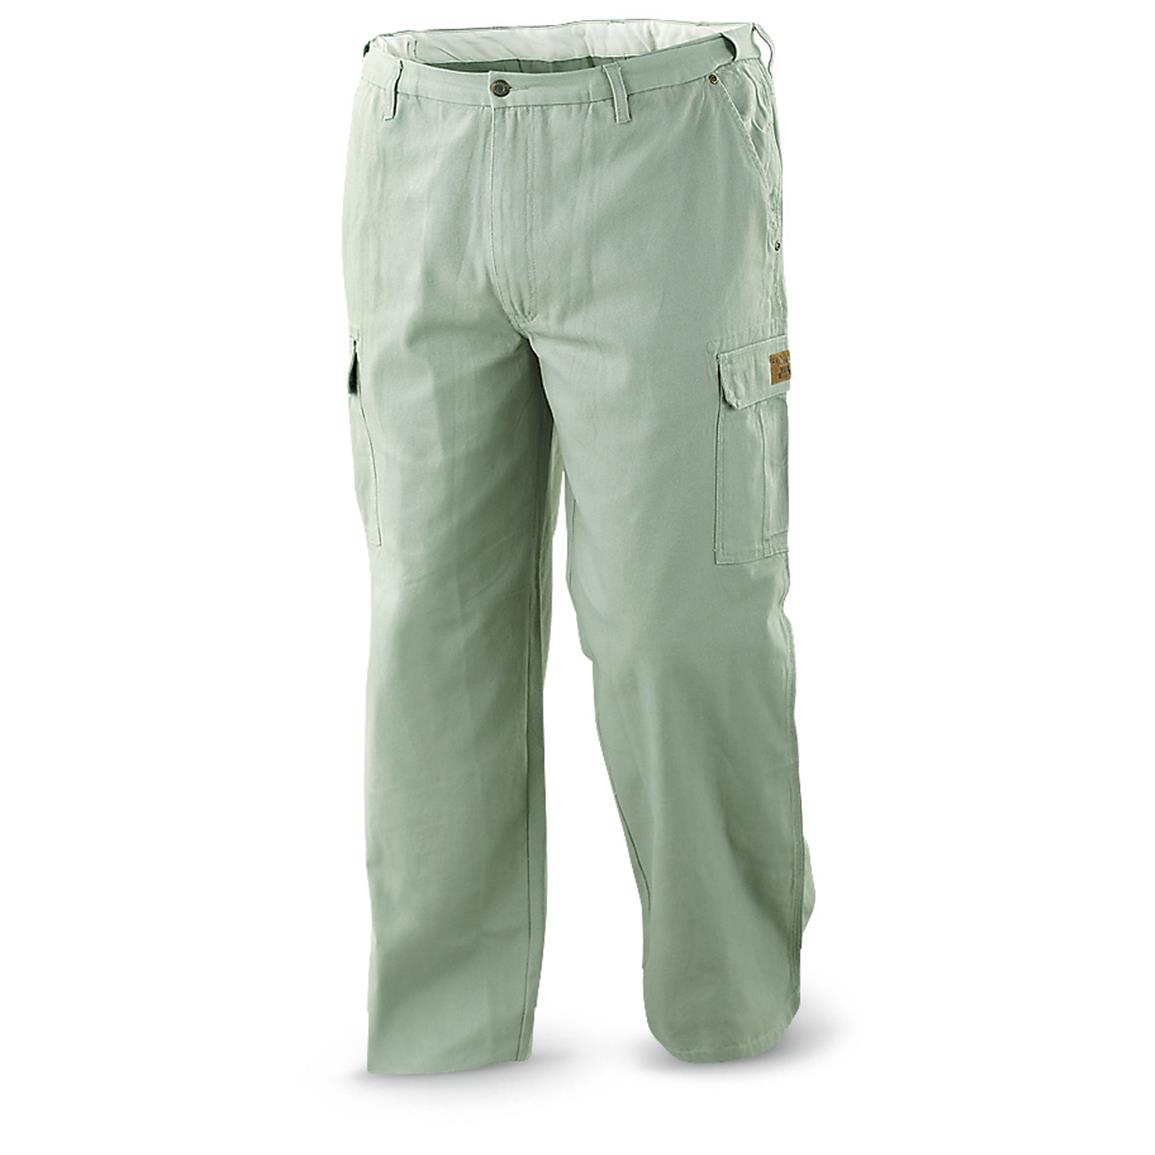 Walls® Heavy-duty Cargo Work Pants - 615685, Jeans & Pants at Sportsman ...